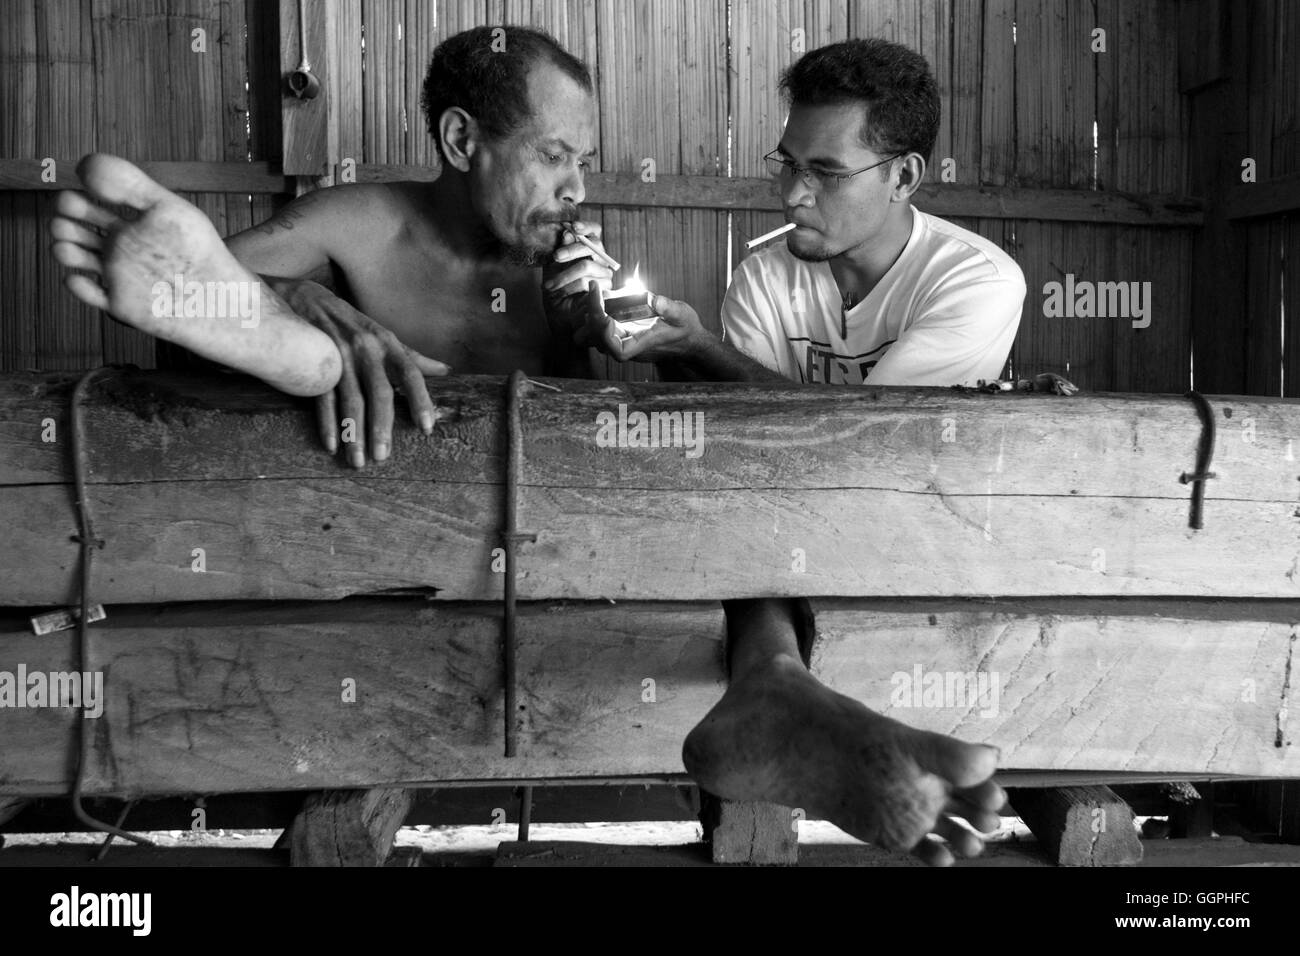 Vater Aventinus Saur zündet sich eine Zigarette für Deo Gracias Kolobanus Abri. Abri ist ein psychisch kranker Mann, der zu einem Strahl in seiner Heimat seit 1997 gefesselt wurde. Die Familie der Abri sperrte ihn in Aktien nach begann er Angriff auf Nachbarn und Durchgangsverkehr. Vater Saur läuft eine Gruppe, die kümmert sich um und bringt Trost für die Opfer und Familien von psychisch leidenden. Laut Human Rights Watch gibt es mindestens 18.800 Menschen derzeit in Indonesien wegen Geisteskrankheit gefesselt wird. Familienmitglieder sagen Verwandten sind gefesselt oder angekettet, um sie daran zu hindern, Schaden sich selbst. Auch Stockfoto